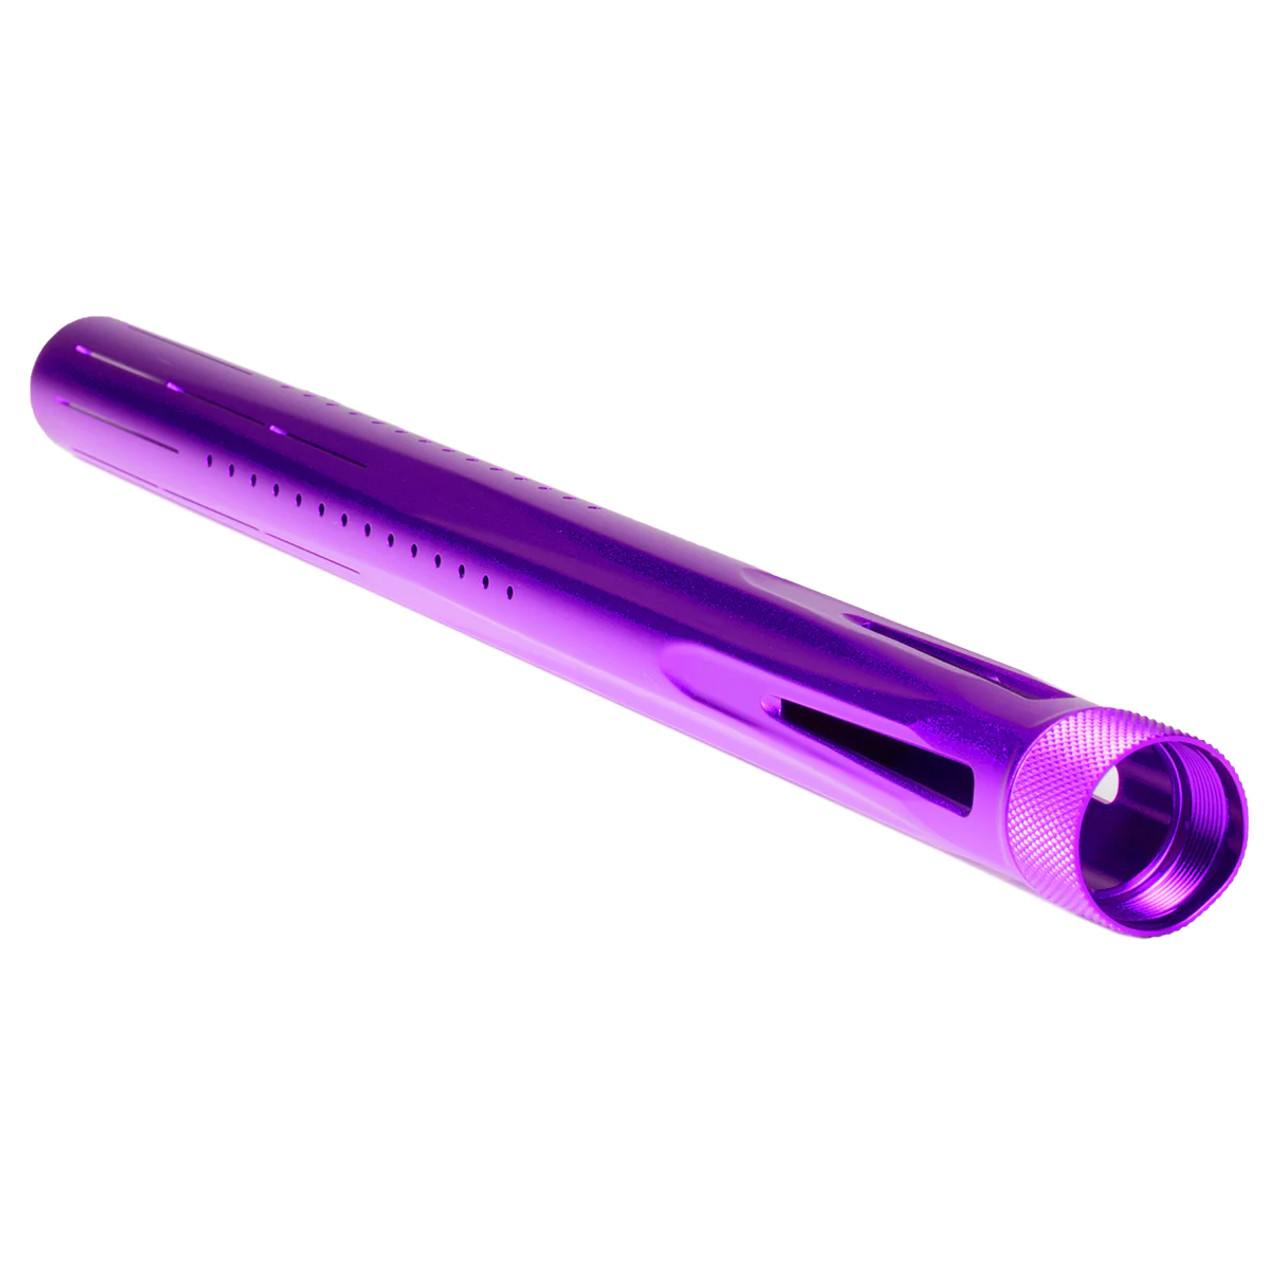 HK - LAZR Tip - Std - Dust Purple